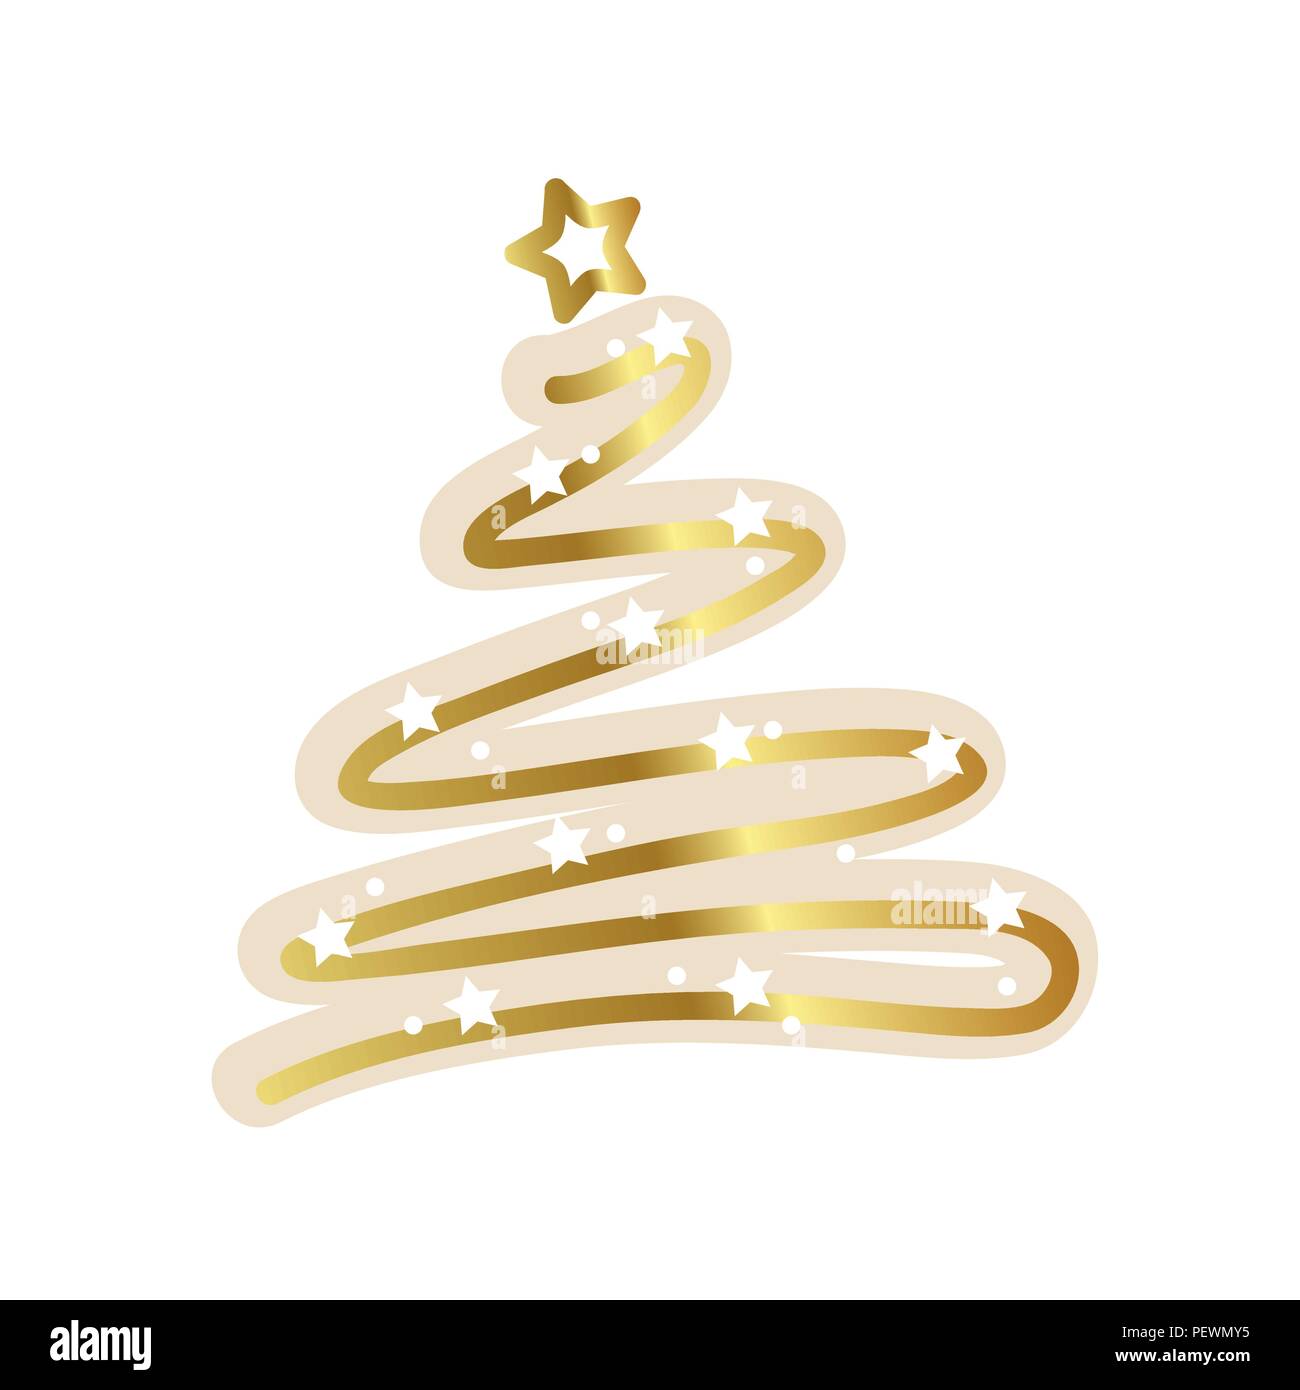 L'arbre de Noël d'or white stars vector illustration EPS10 Illustration de Vecteur